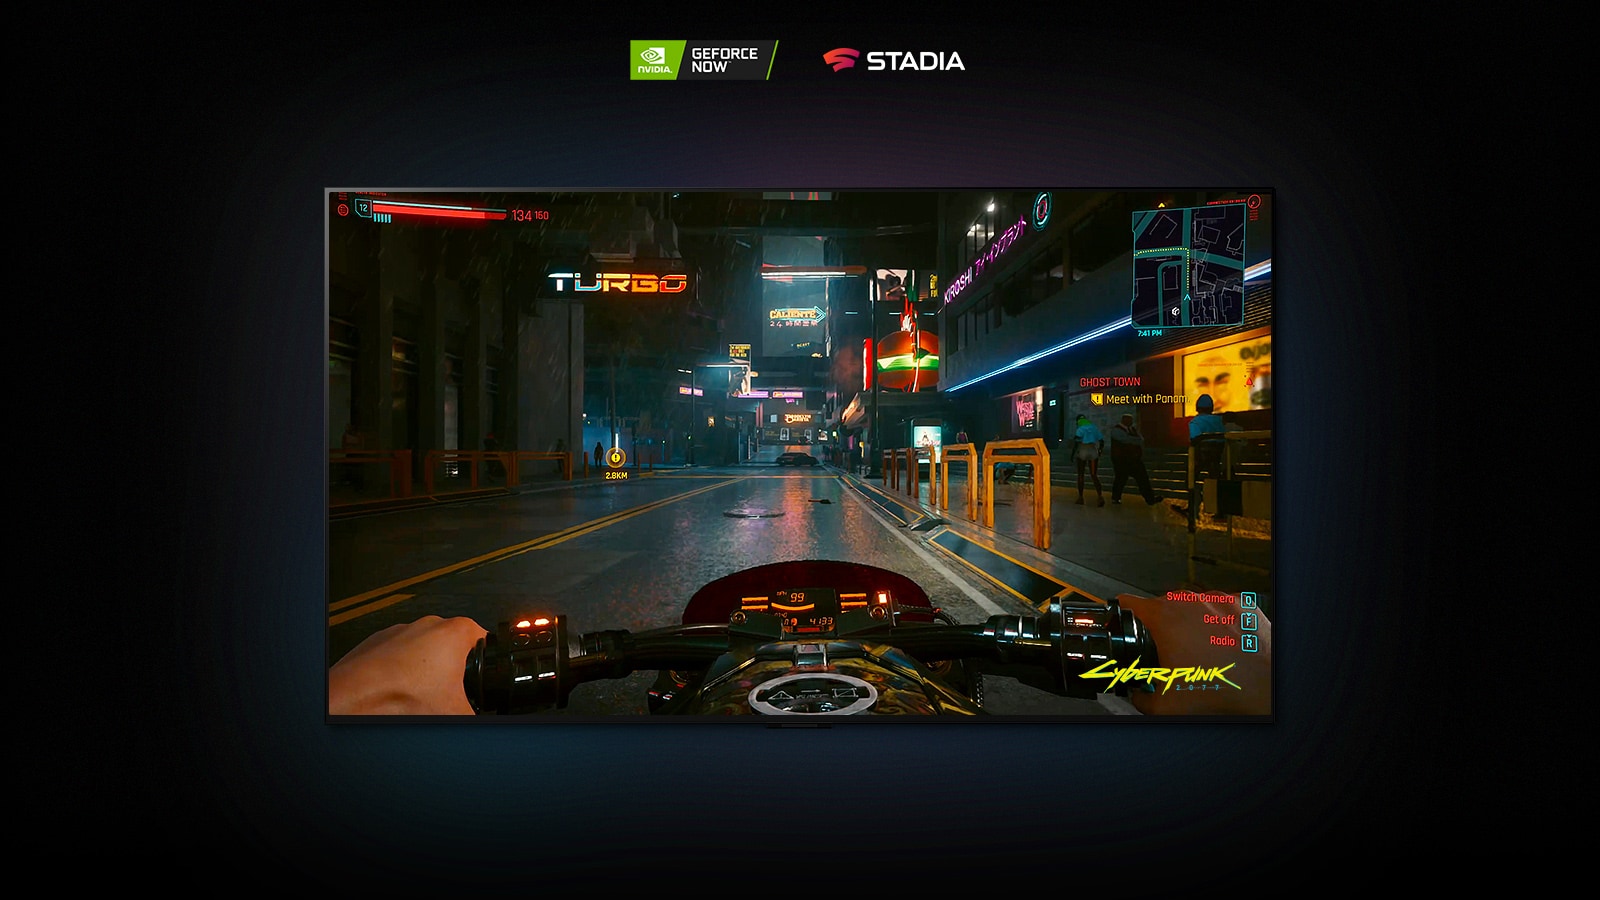 Dans une scène de Cyberpunk 2077 présentée sur un téléviseur LG OLED, le joueur roule dans une rue éclairée au néon sur une motocyclette.